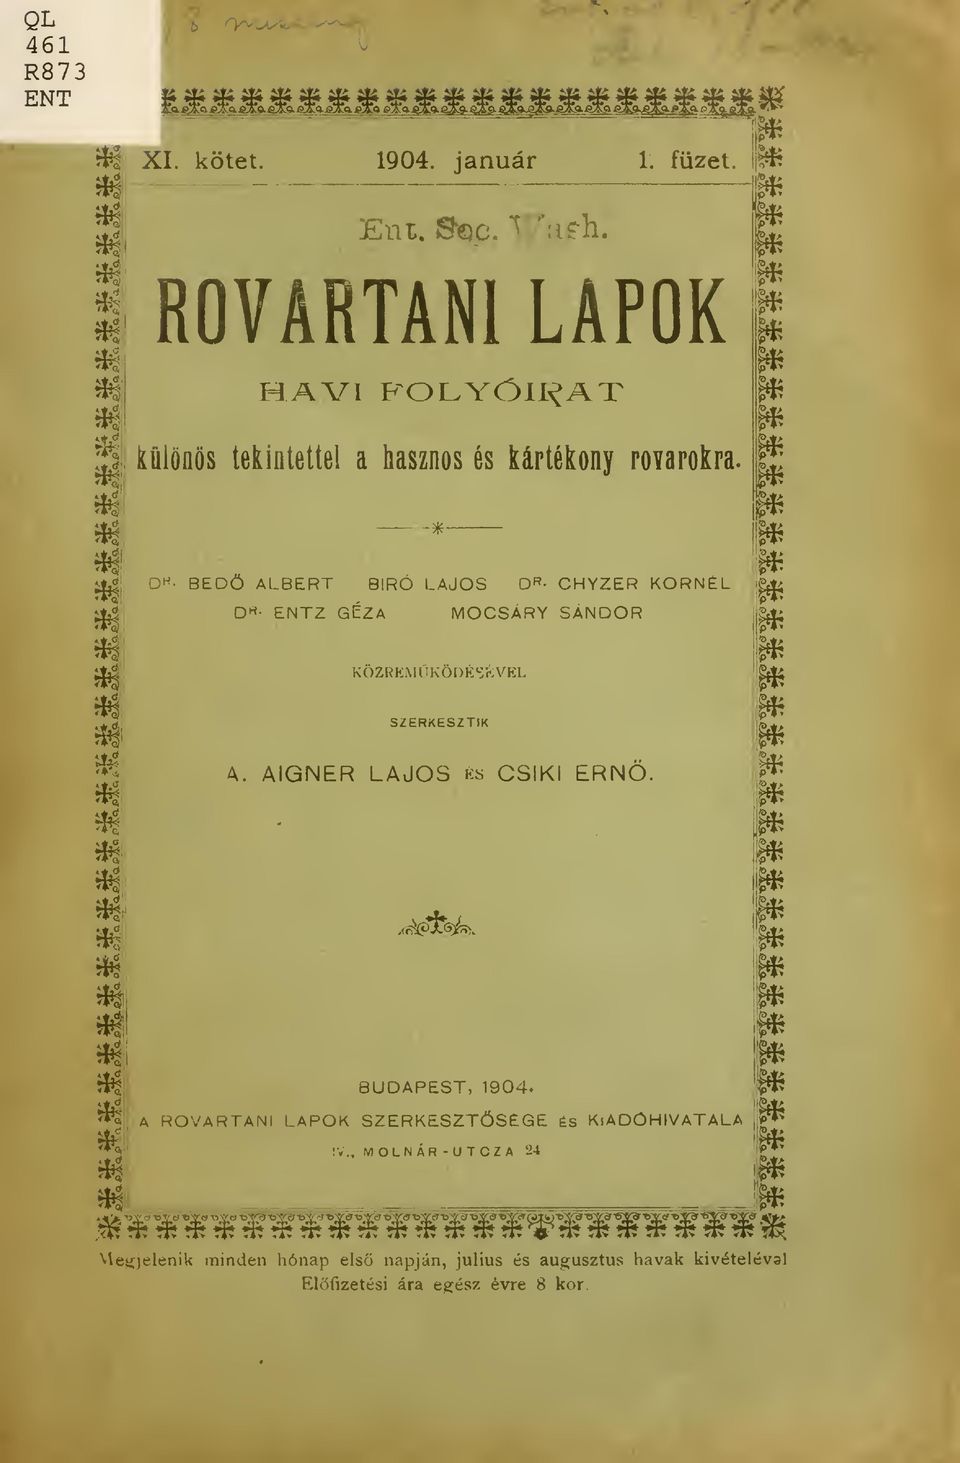 AIGNER LAJOS és CSÍKI ERN. W*?*fe^ Mi BUDAPEST, 1904.